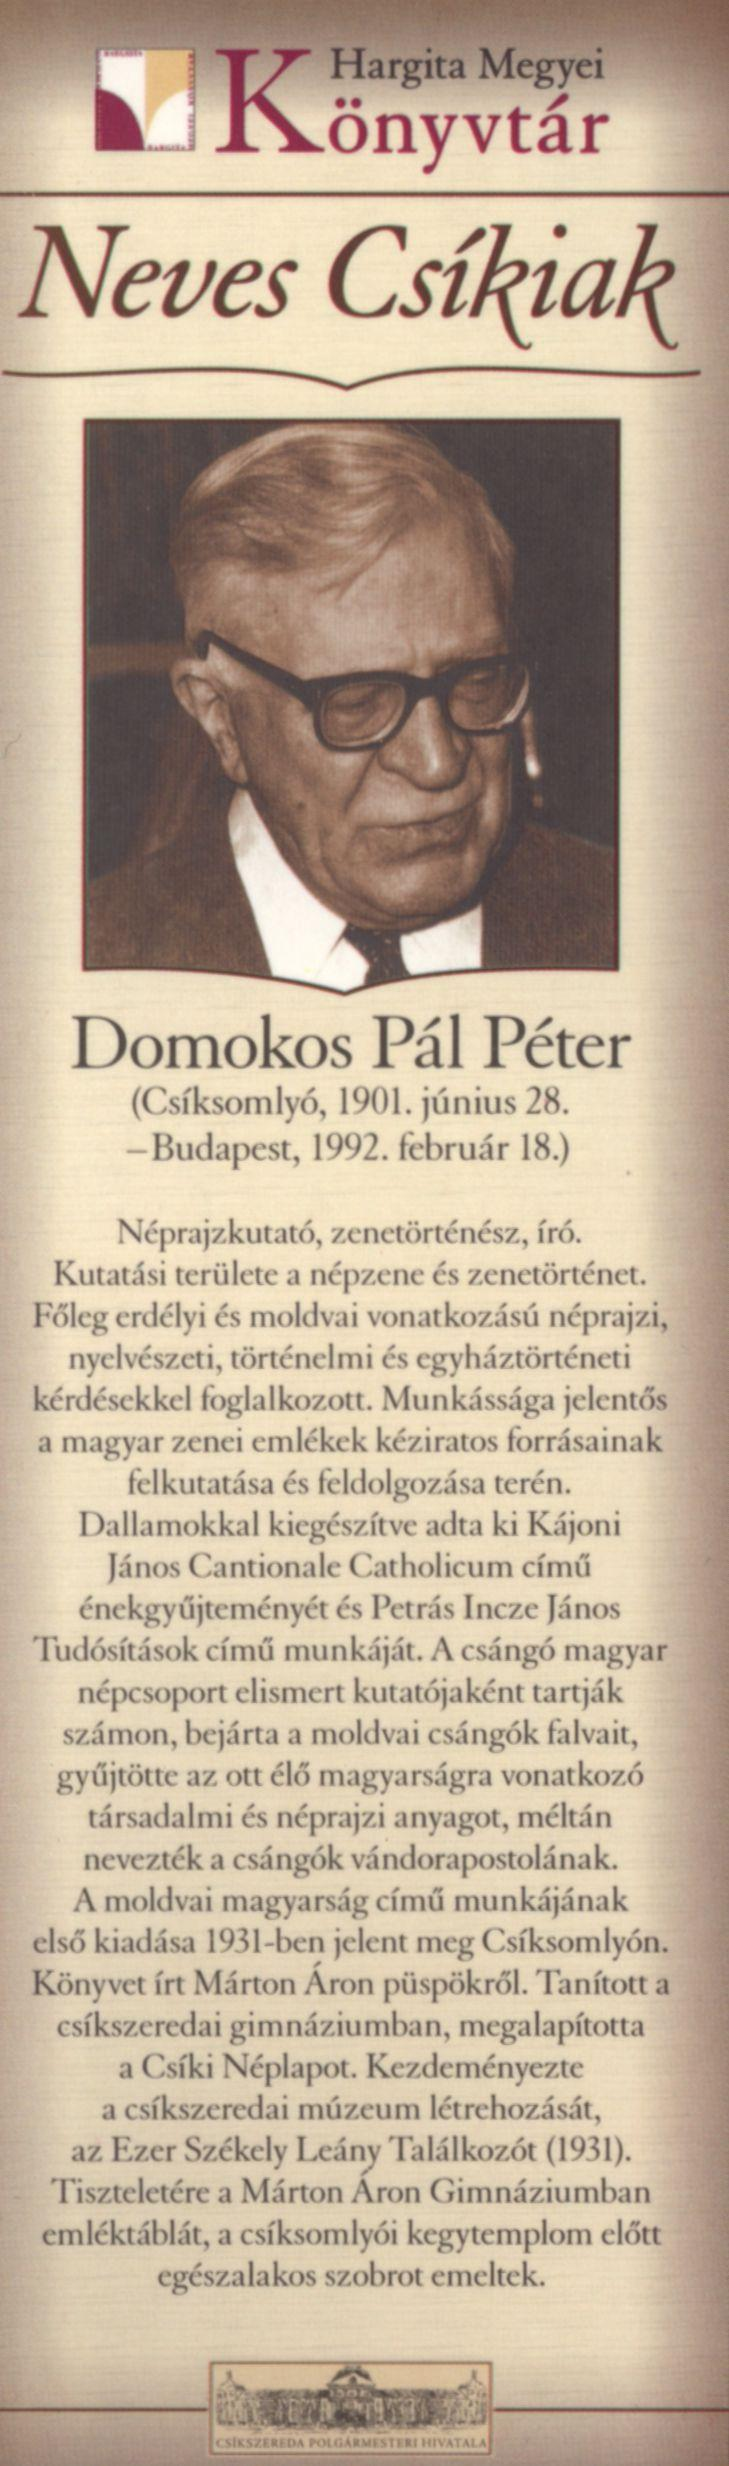 Domokos Pál Péter (Csíksomlyó, 1901. június 28. -Budapest, 1992. február 18.) Néprajzkutató, zenetörténész, író. Kutatási területe a népzene és zenetörténet.